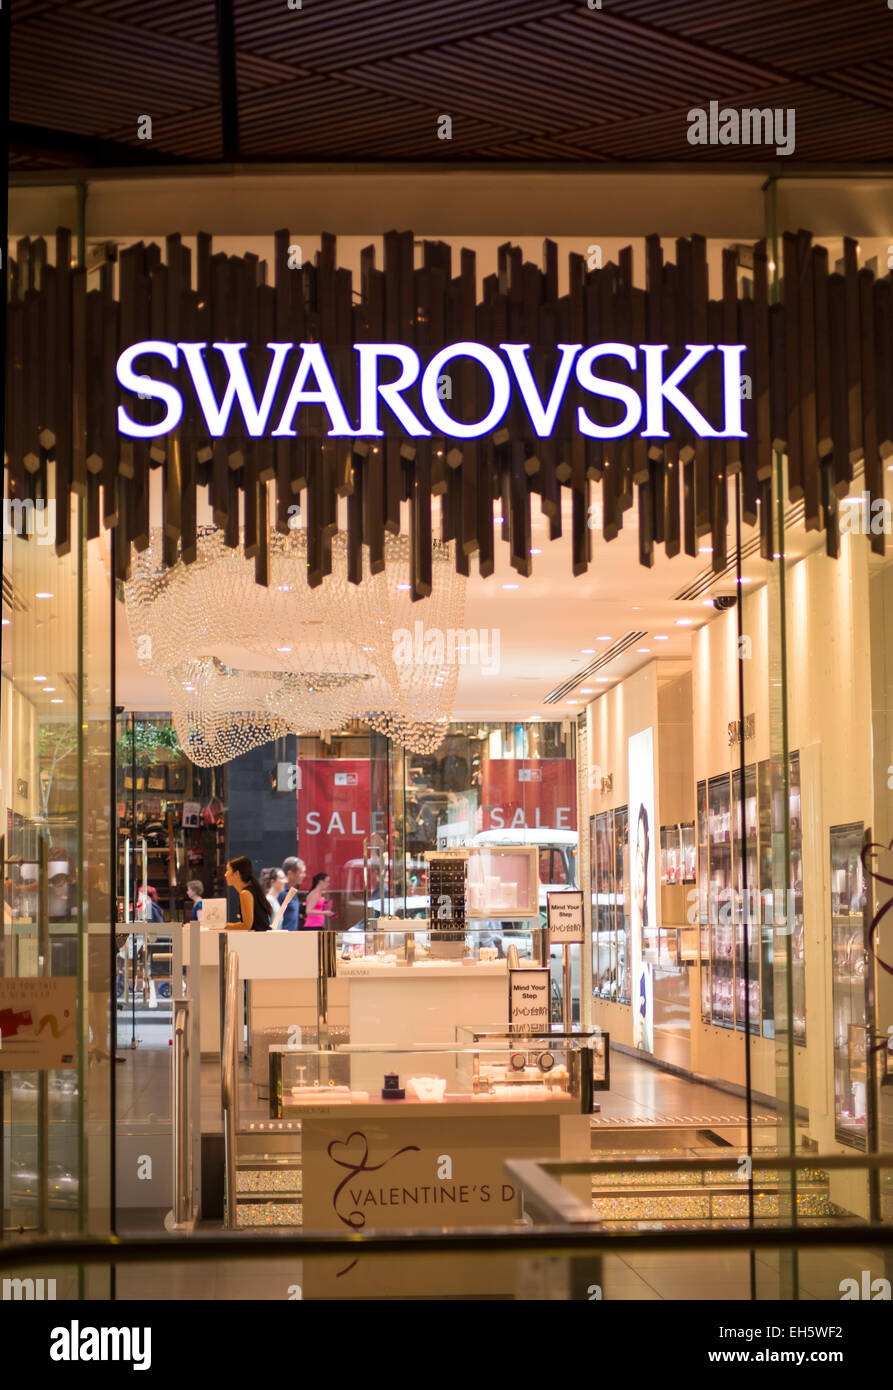 Swarovski jewelry store -Fotos und -Bildmaterial in hoher Auflösung - Seite  2 - Alamy